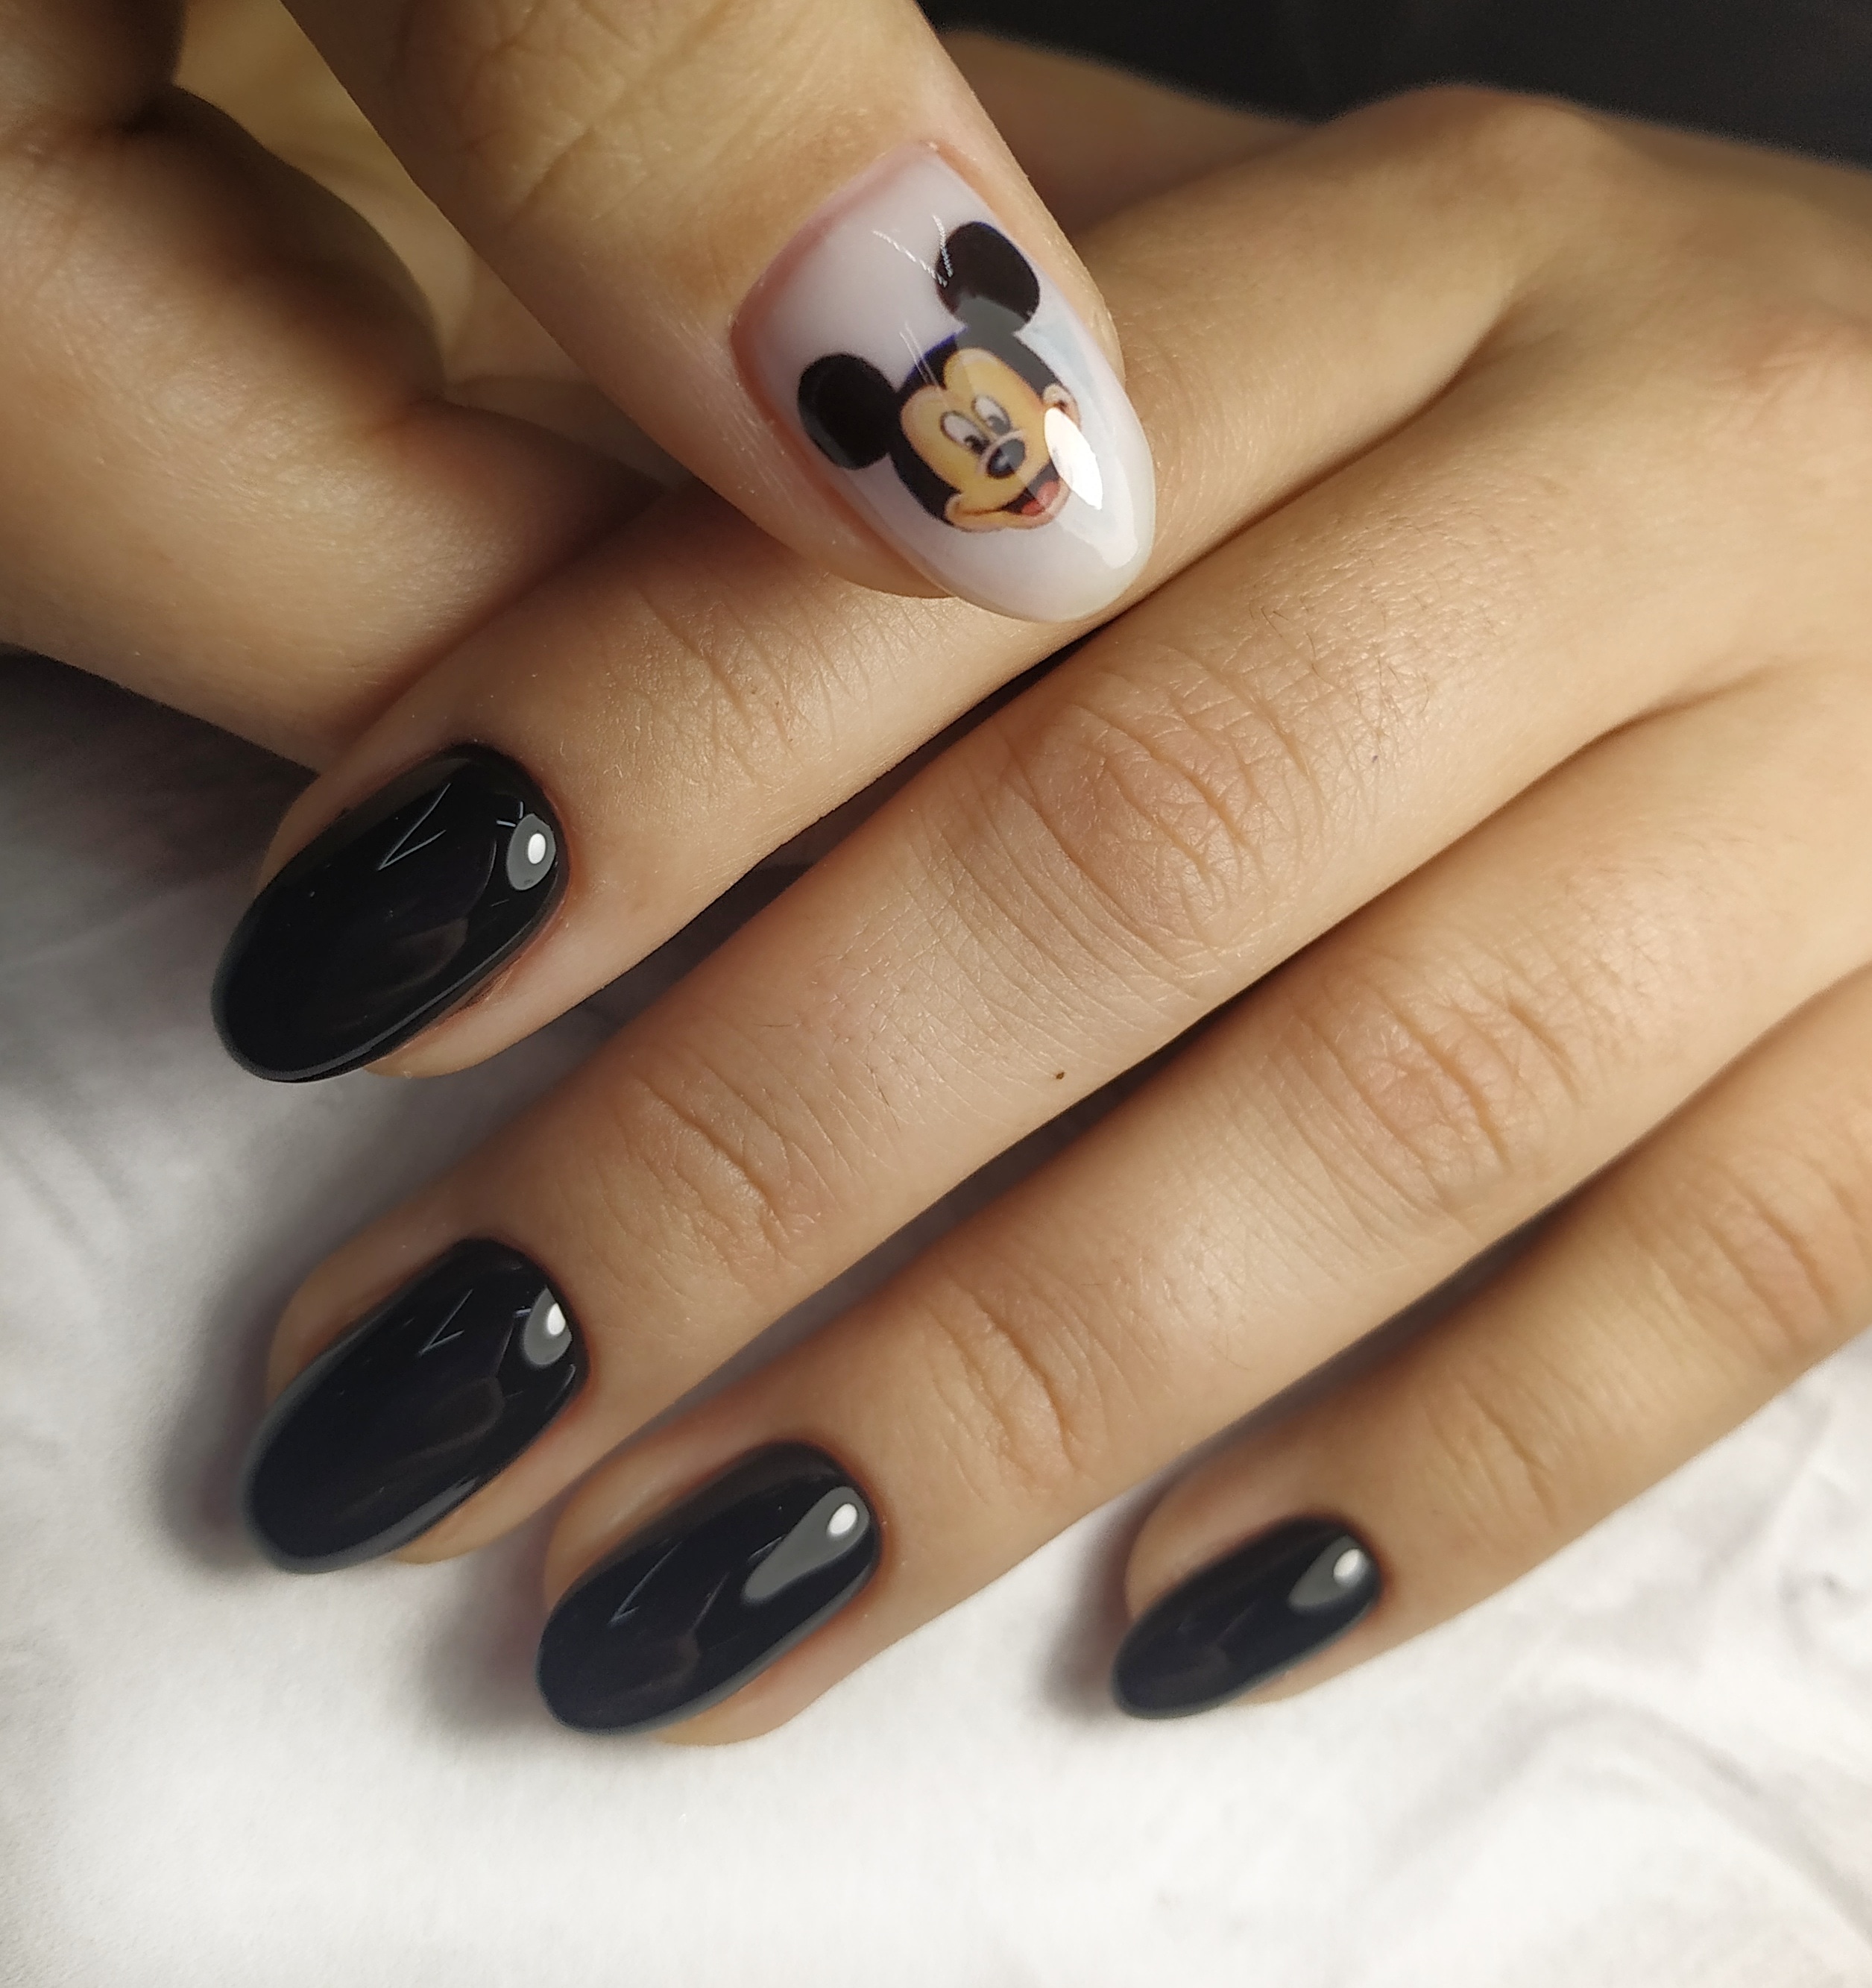 Маникюр с мультяшным слайдером Микки Маус в черном цвете.